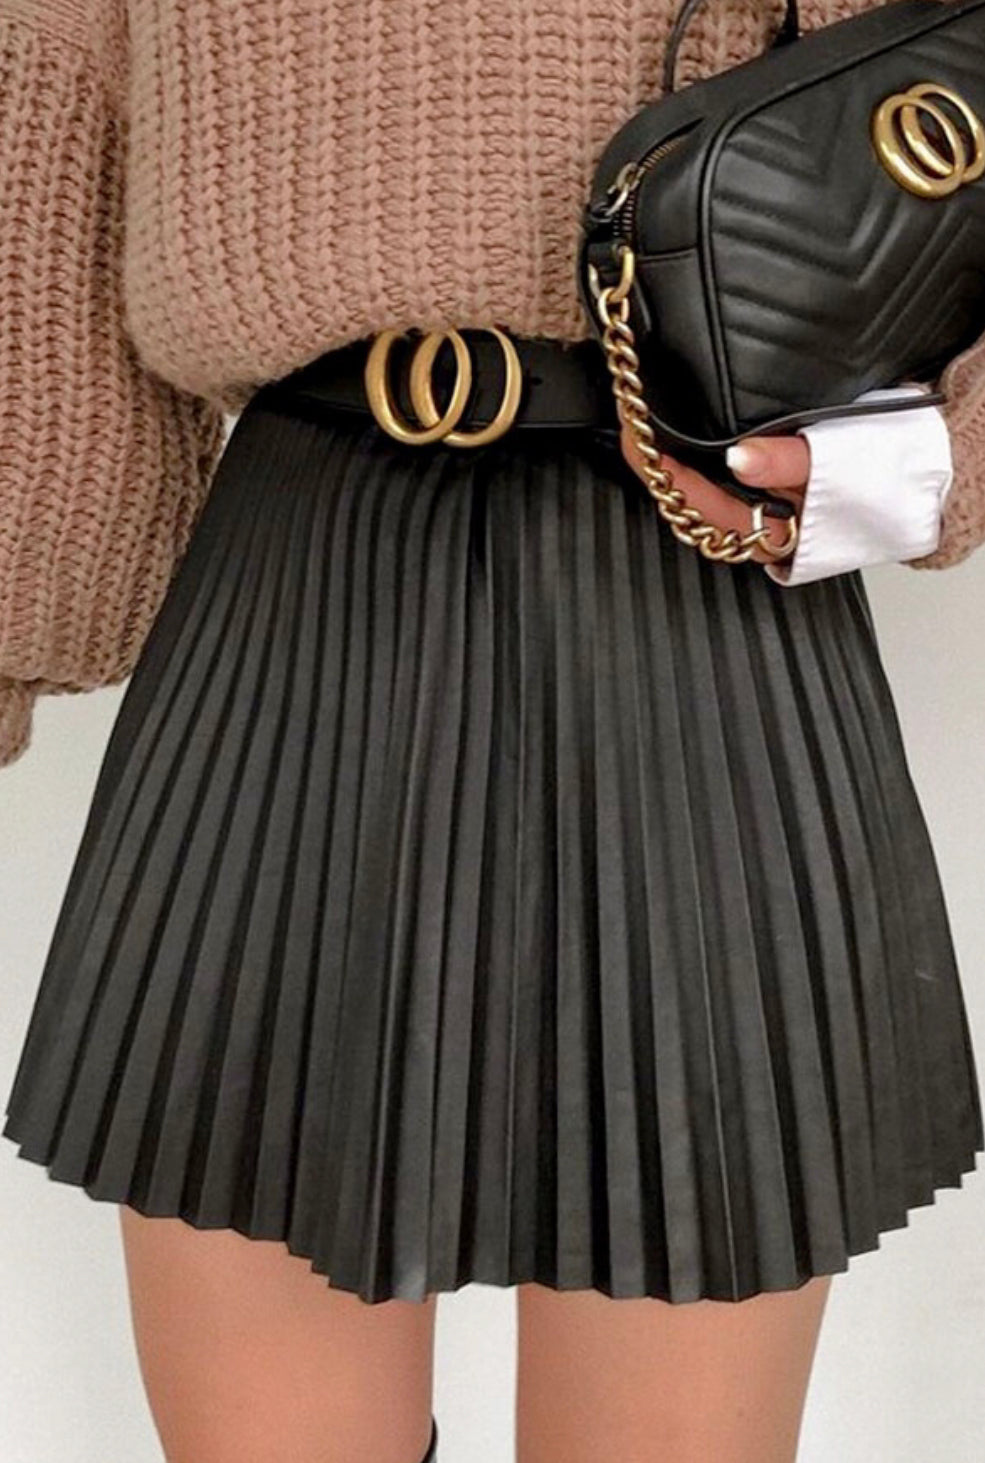 High Waist A Line Pleated Skirt